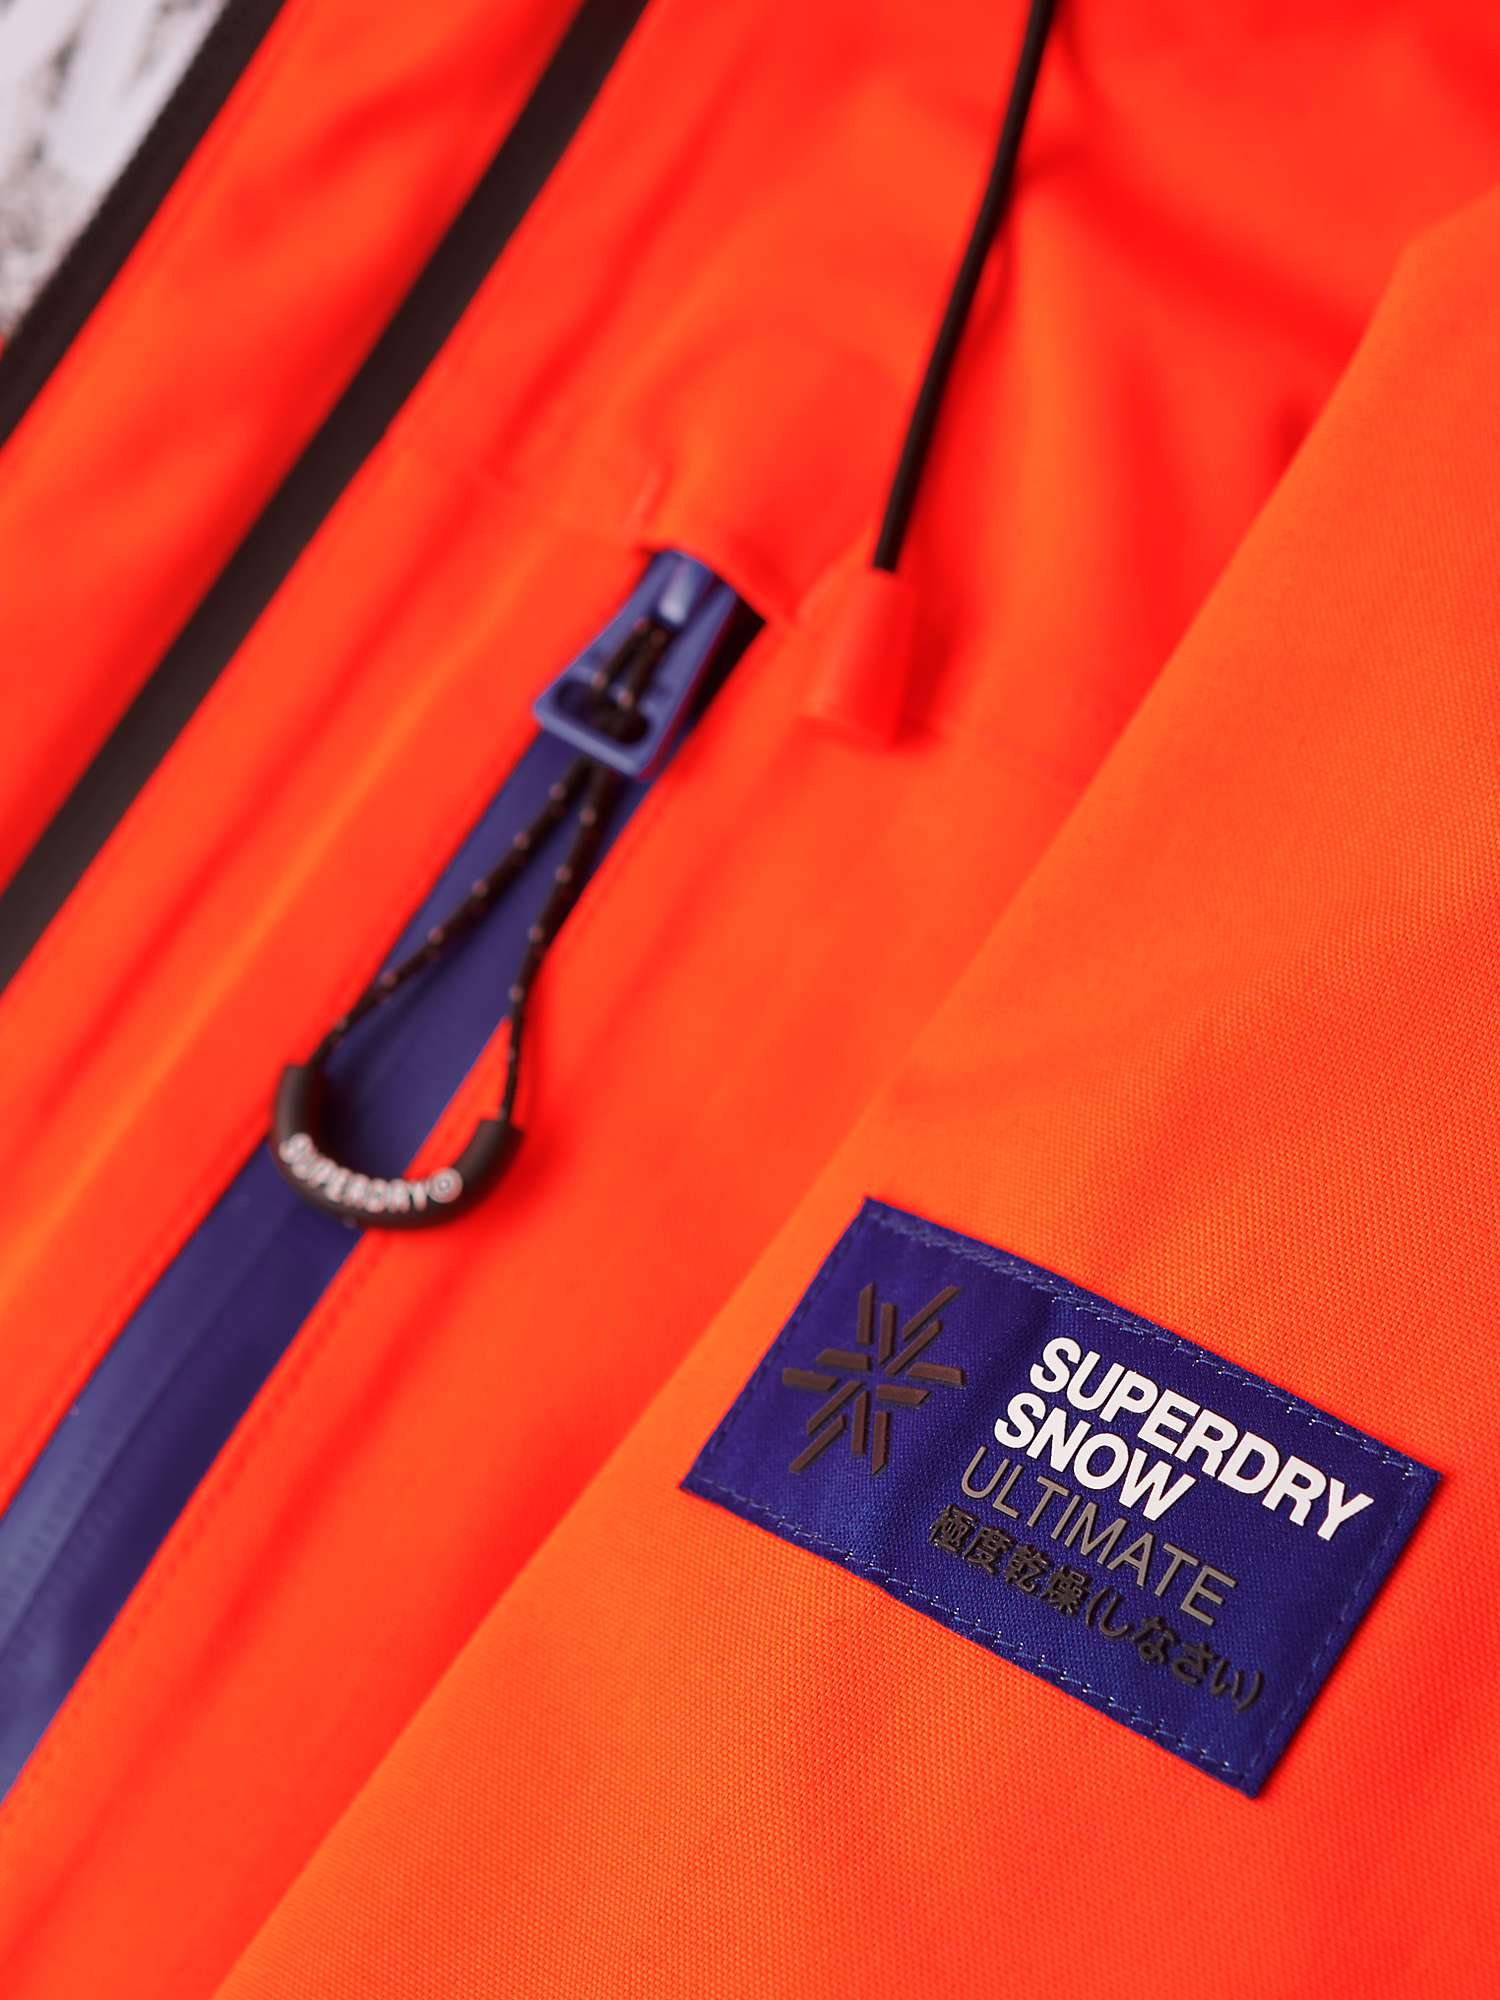 Buy Superdry Ski Ultimate Rescue Jacket Online at johnlewis.com